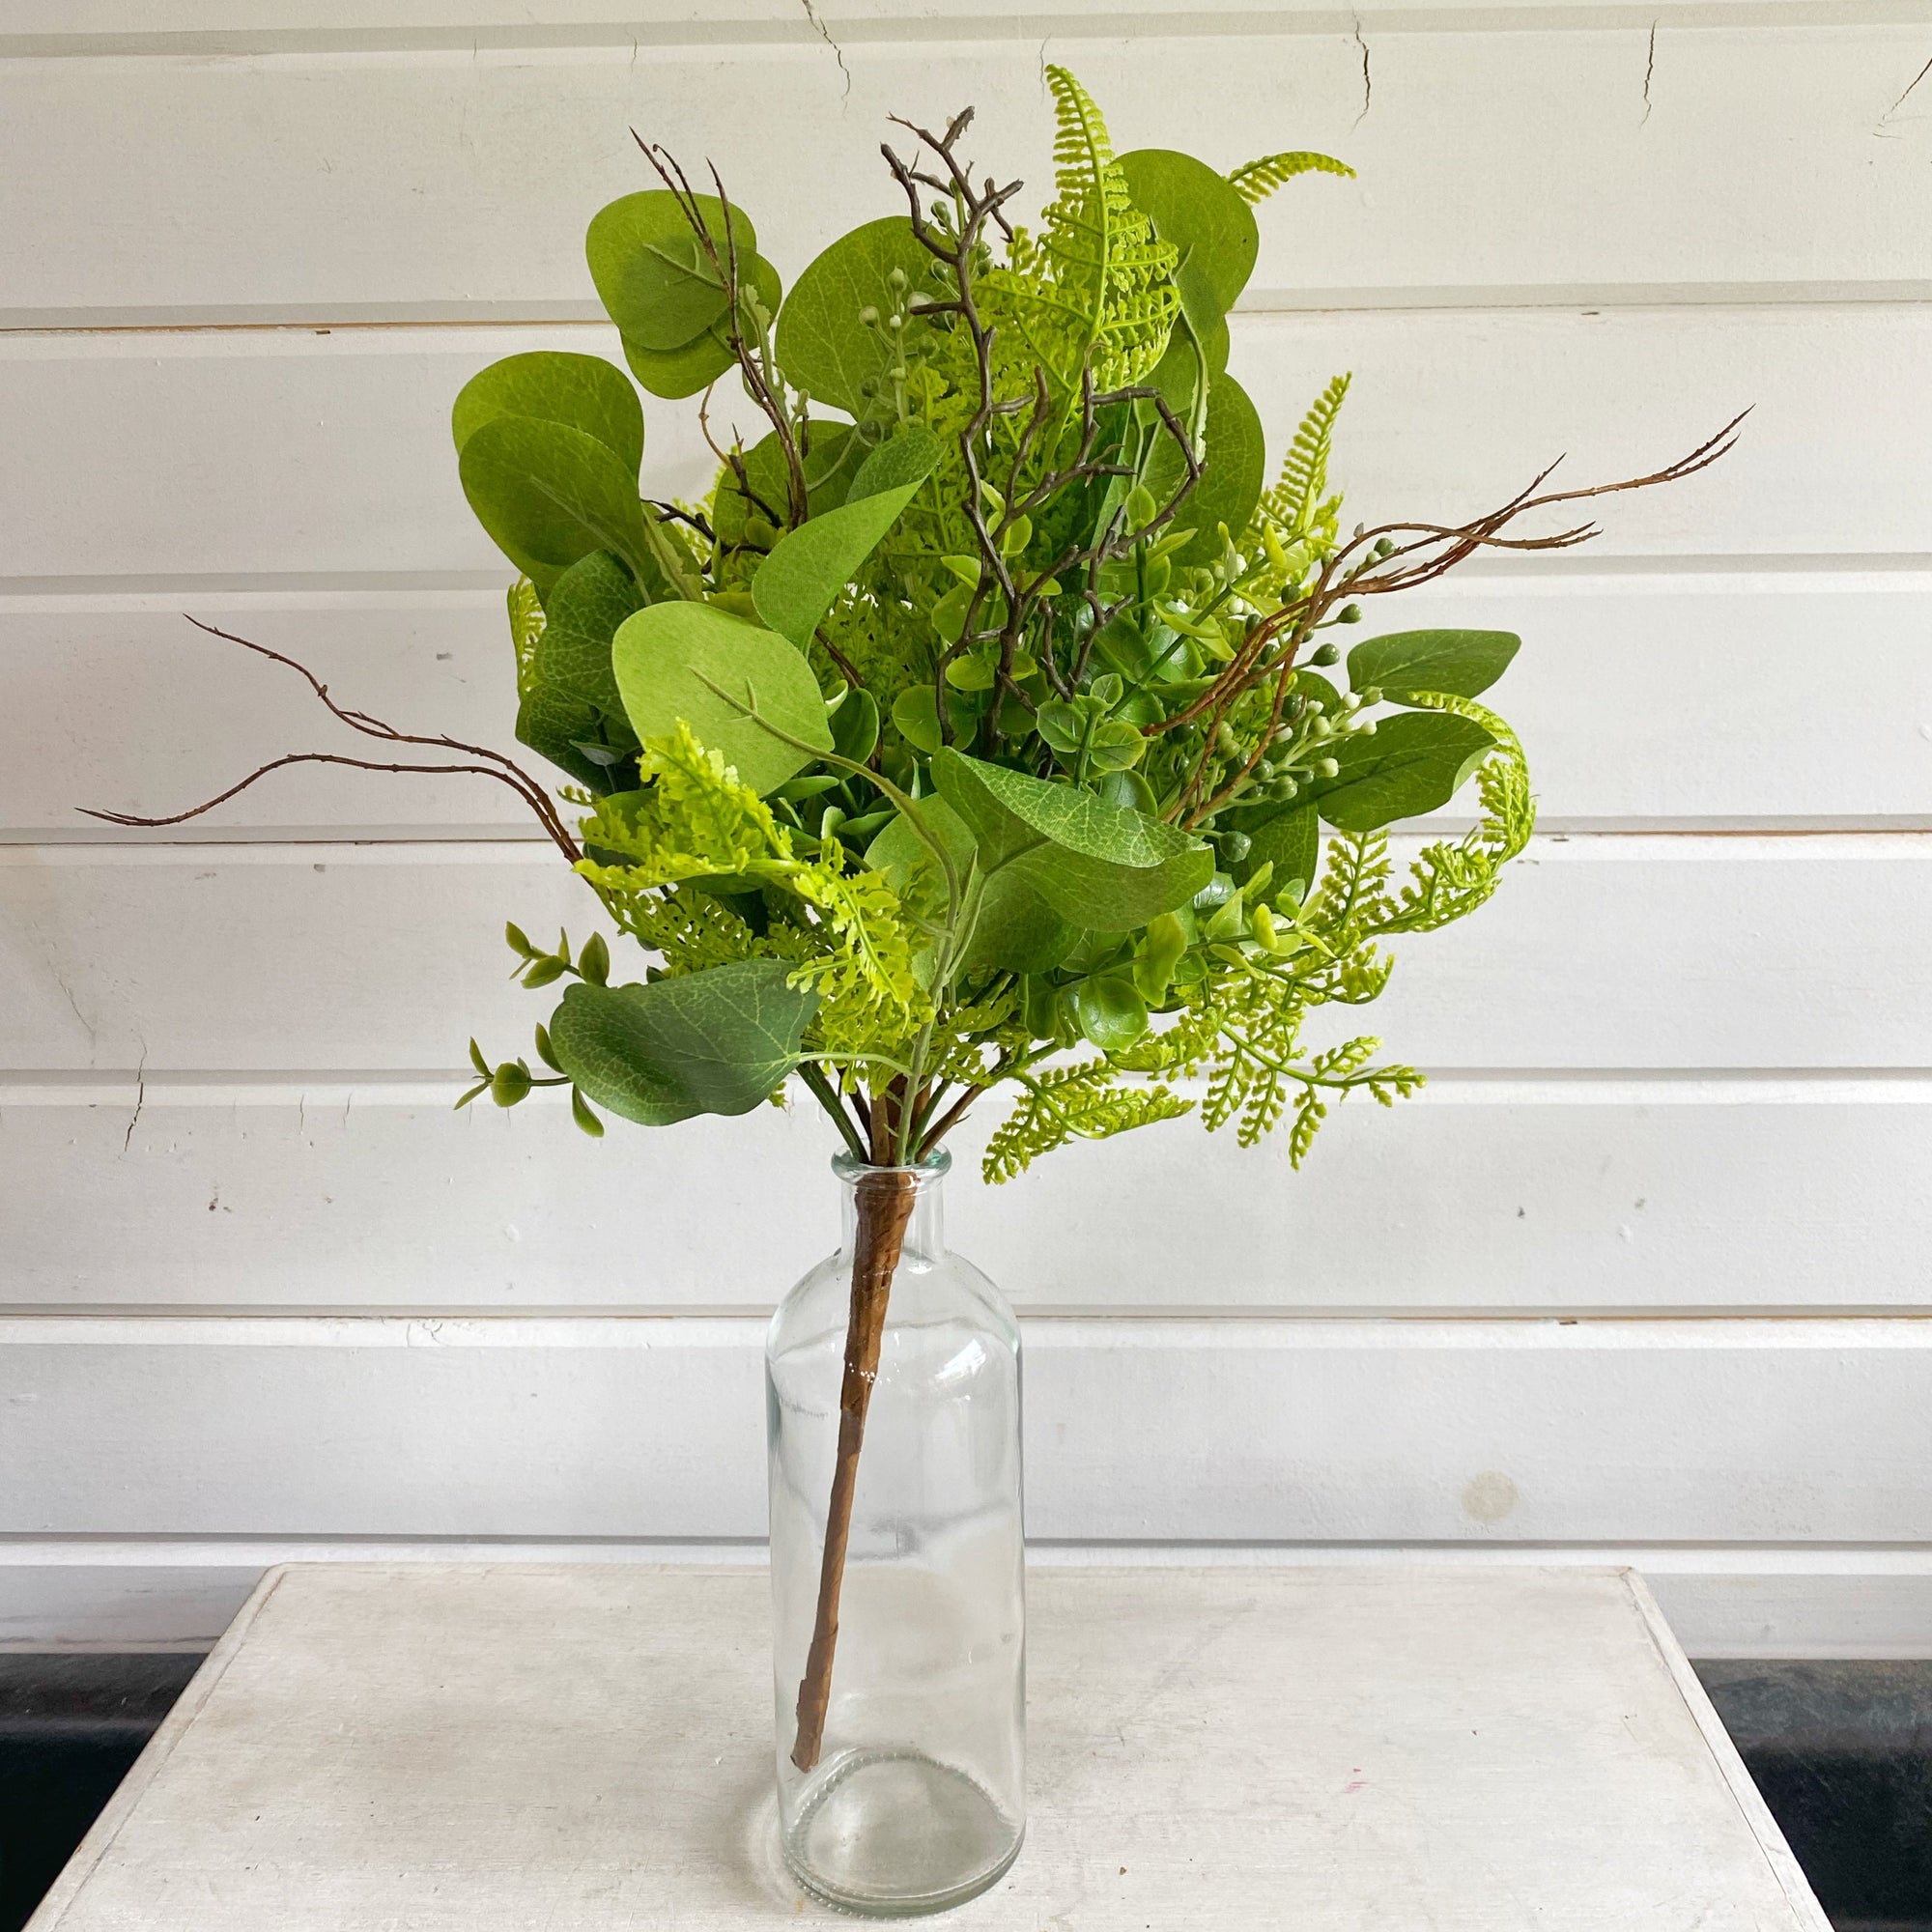 Artificial Fern Garland - Artificial Greenery - Florals - Craft